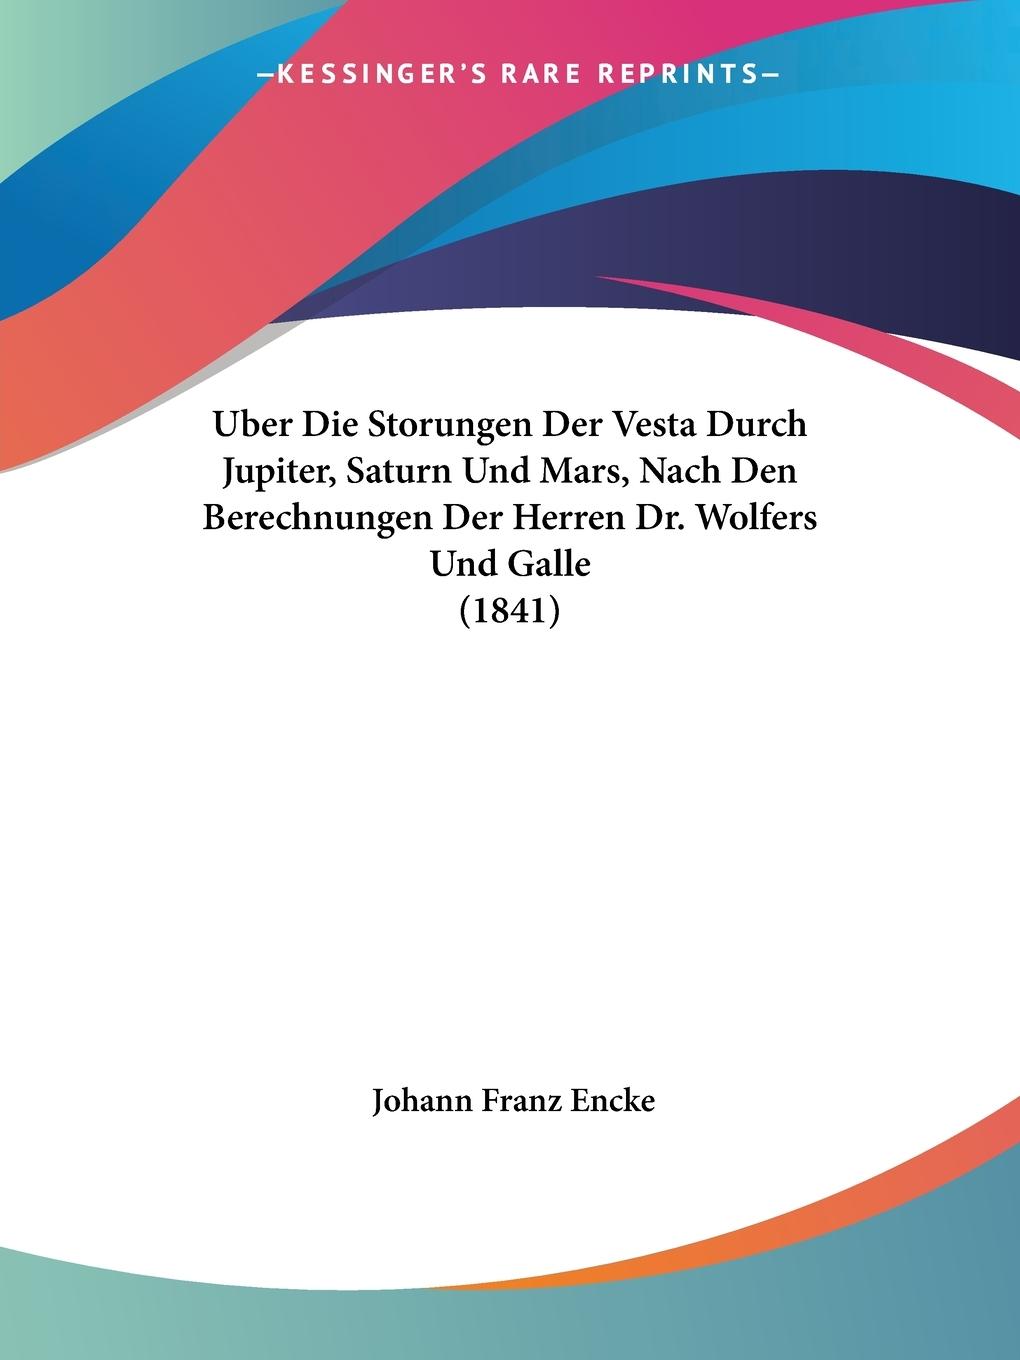 Uber Die Storungen Der Vesta Durch Jupiter, Saturn Und Mars, Nach Den Berechnungen Der Herren Dr. Wolfers Und Galle (1841) - Encke, Johann Franz